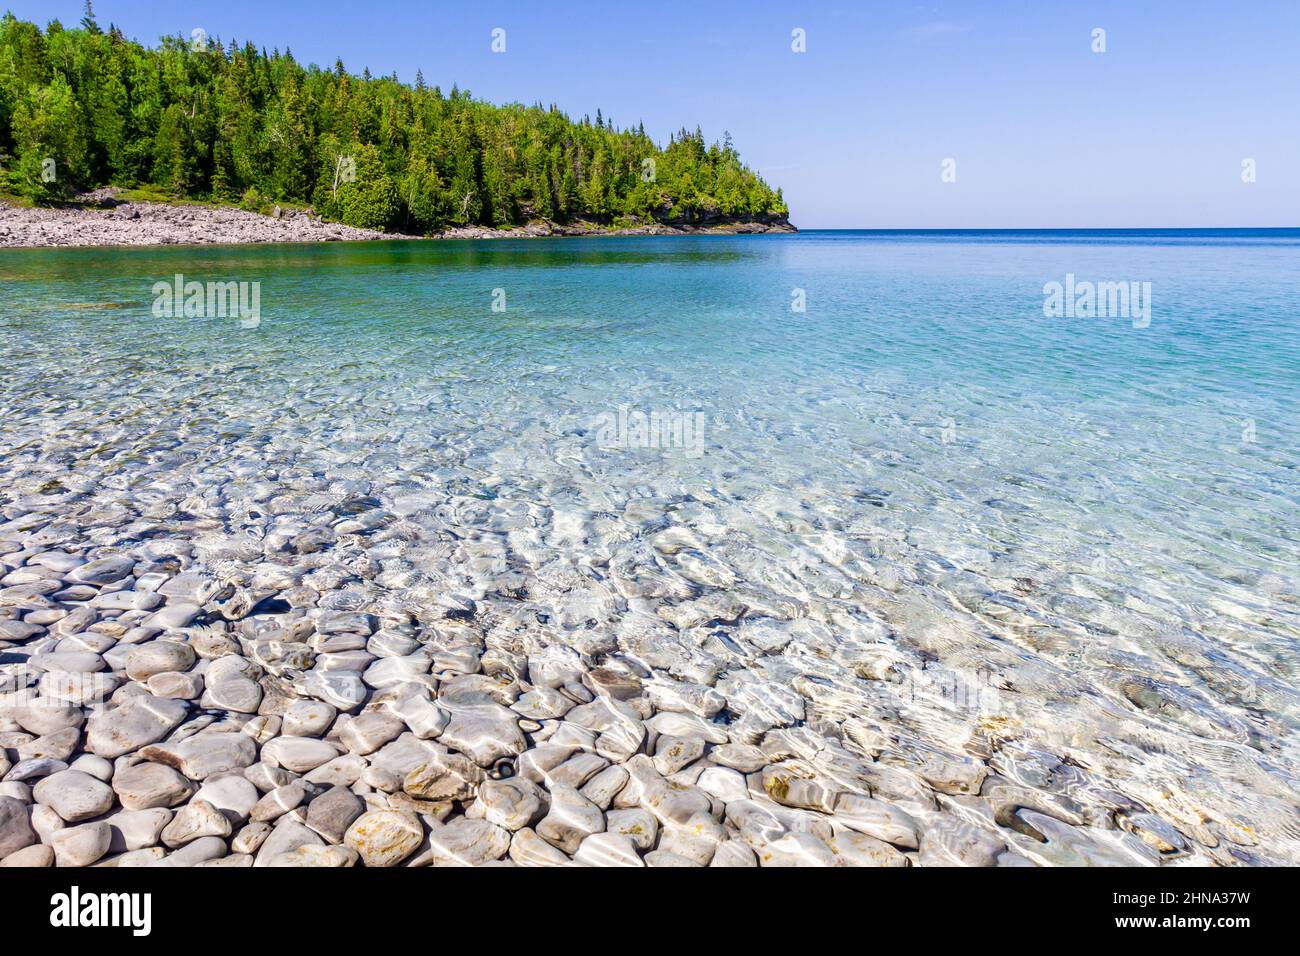 Weiße, steinige Küste entlang des Huron-Sees. Kristallklares Wasser zeigt Kalksteinfelsen. Little Cove Beach, Bruce Peninsula National Park, Ontario, Kanada Stockfoto